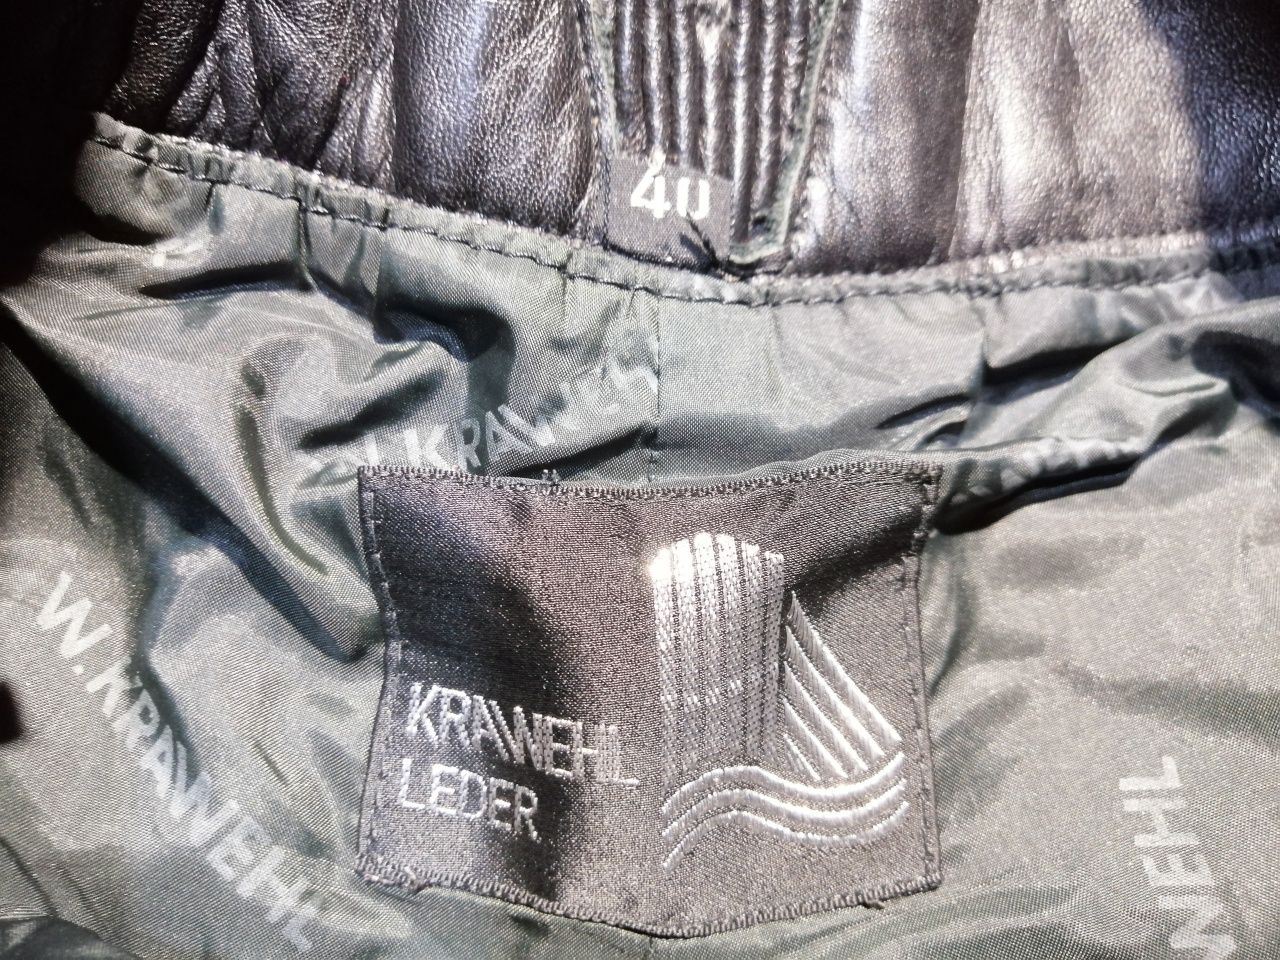 Spodnie damskie skórzane motocyklowe marki Krawehl Leder L